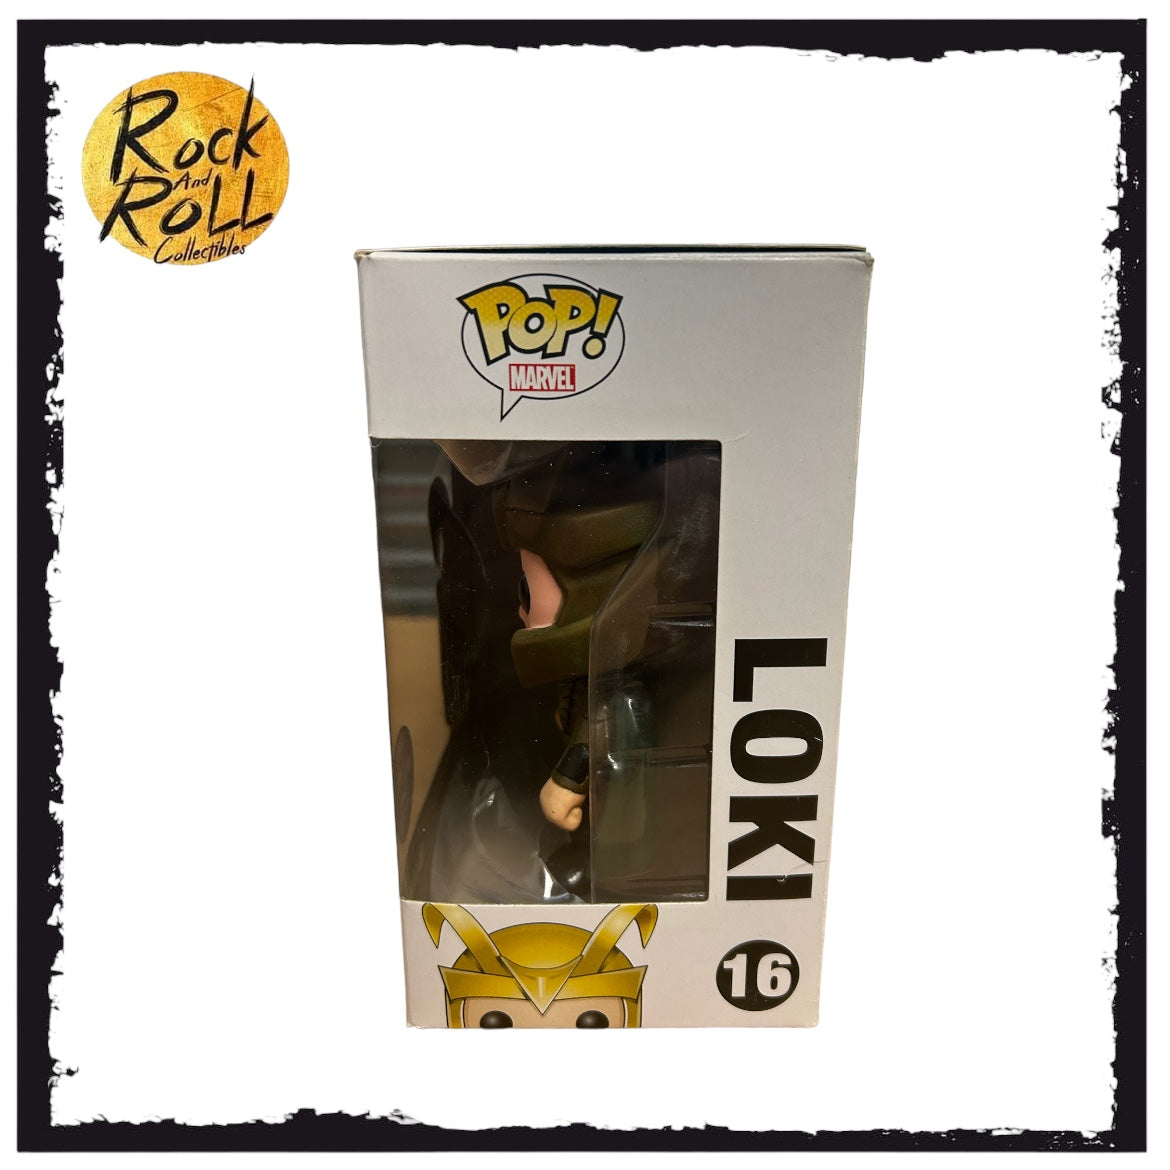 Loki #16 Funko Pop! - The Avengers - SDCC 2012 Exclusive LE480 Pcs - Condition 7/10